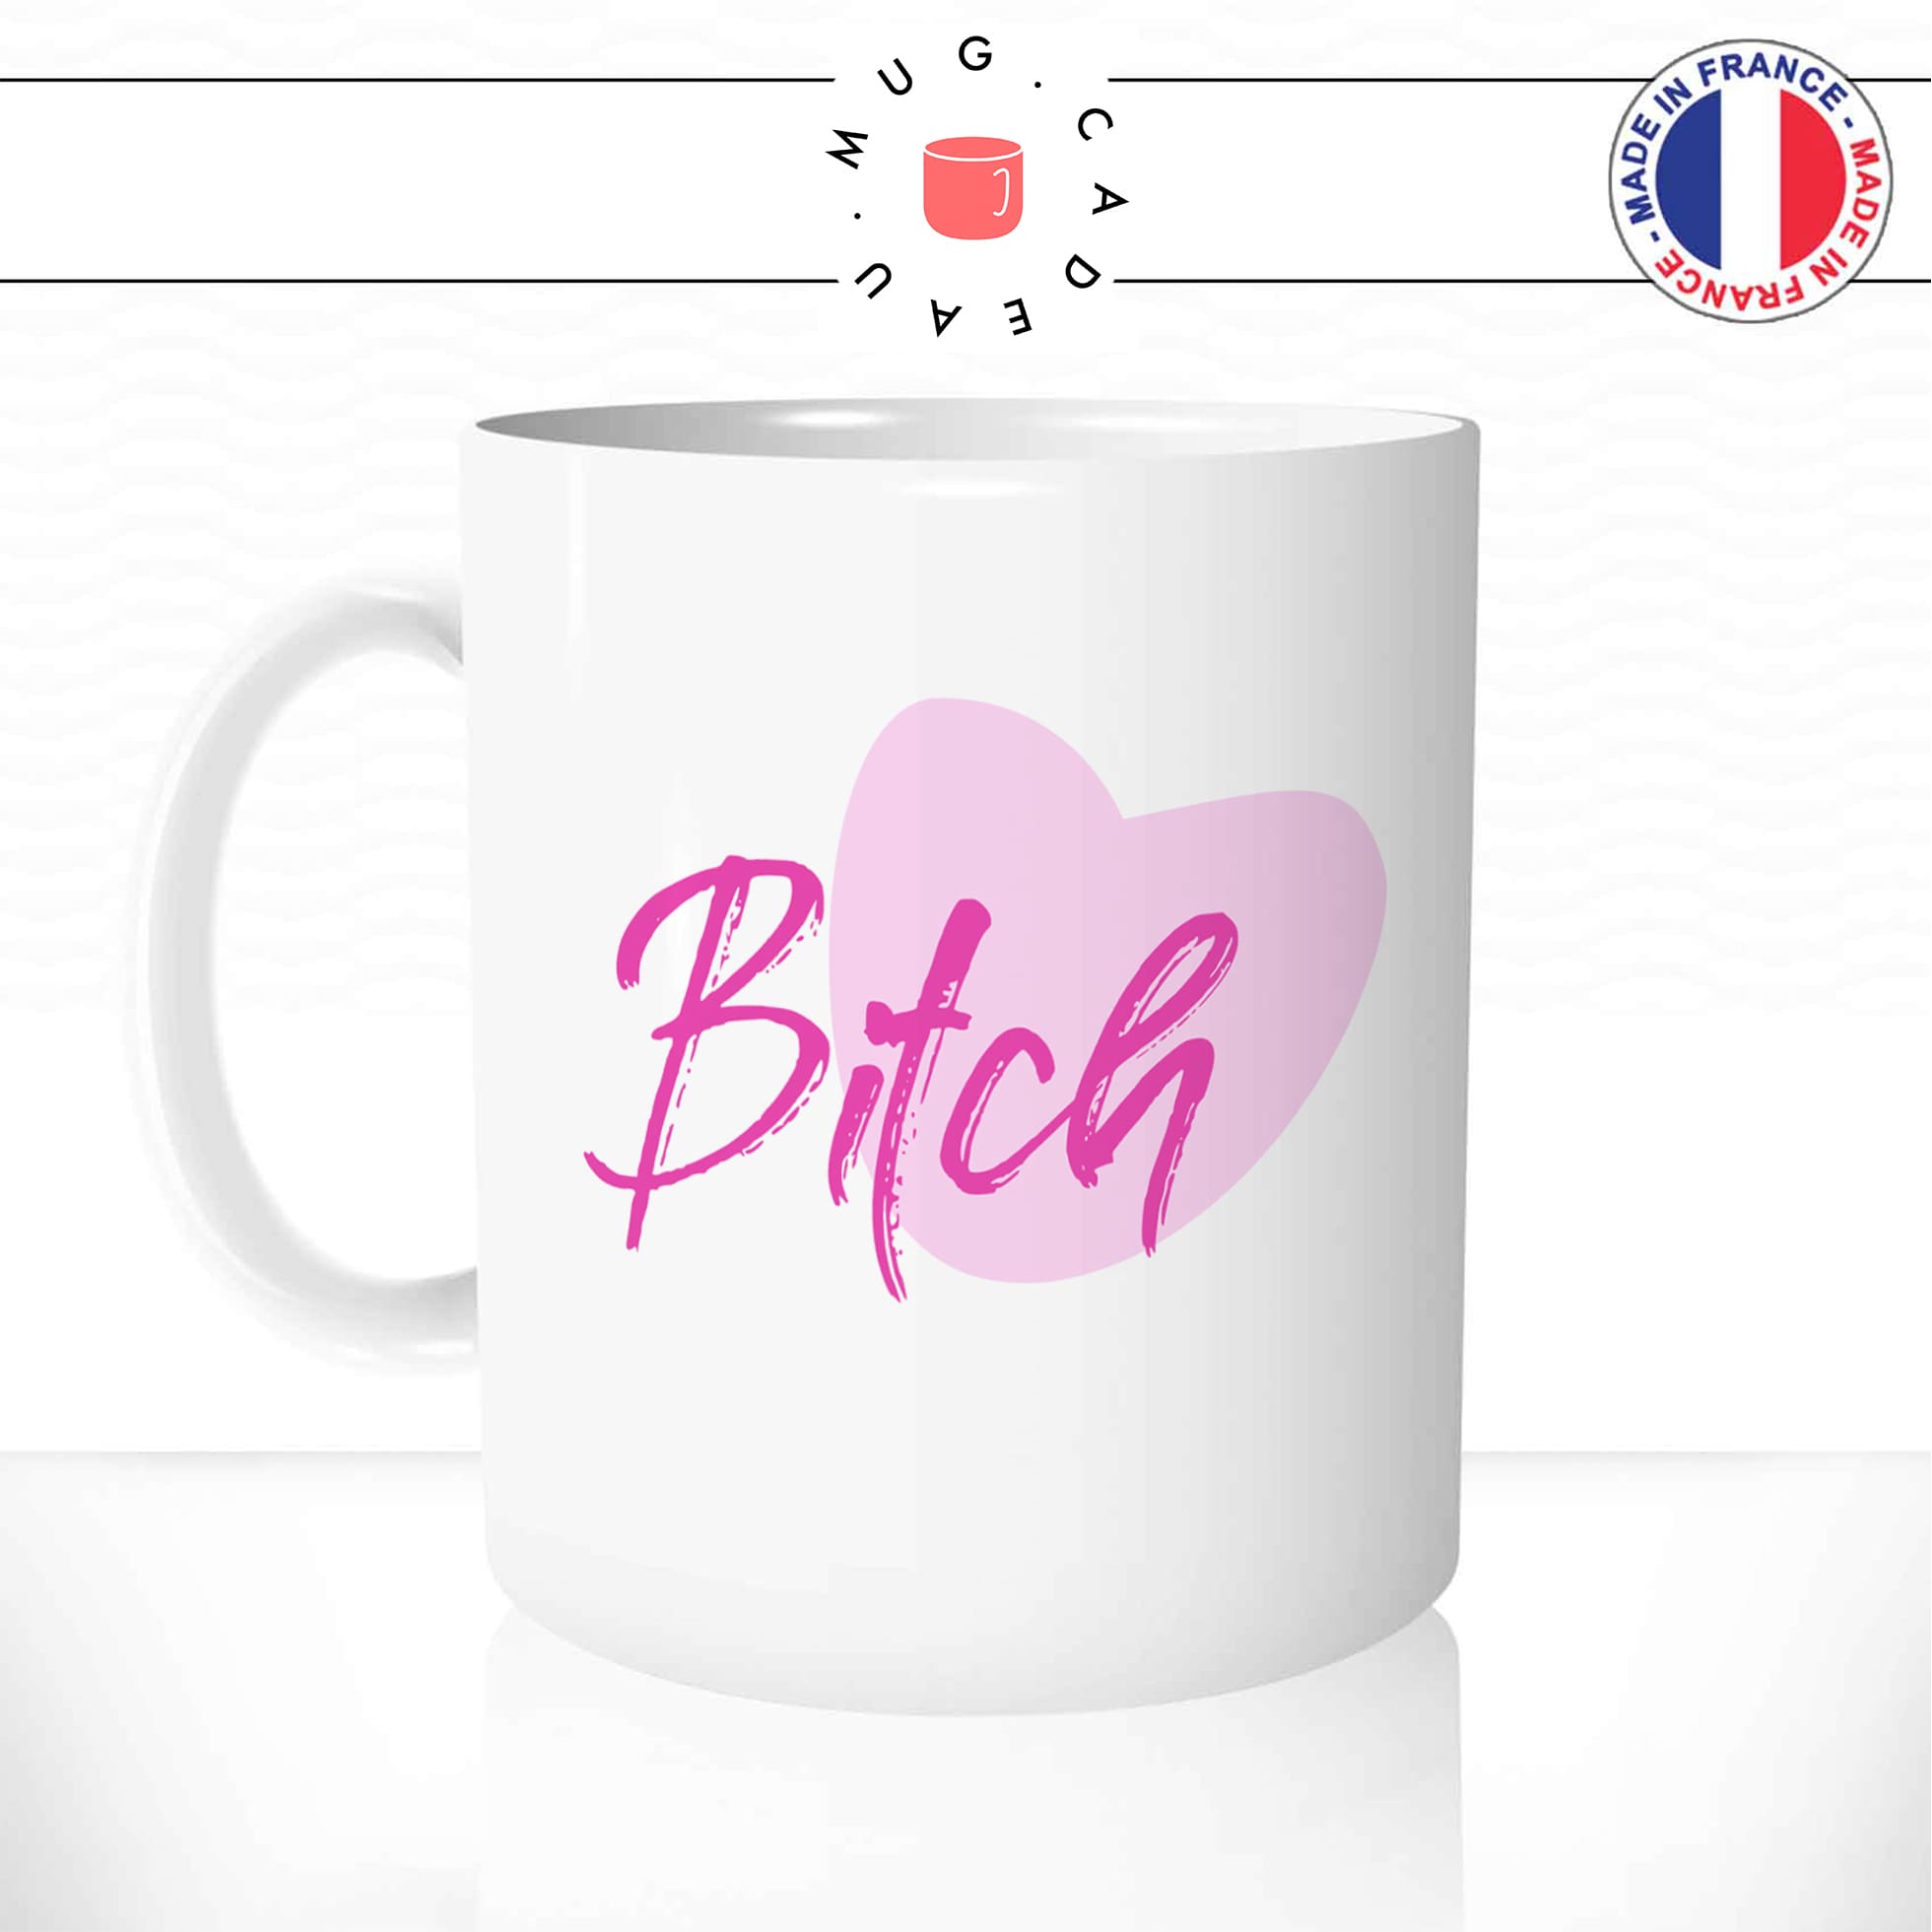 mug-tasse-blanc-unique-bitch-pétasse-copine-coeur-rose-mignon-homme-femme-parodie-humour-fun-cool-idée-cadeau-original-personnalisé